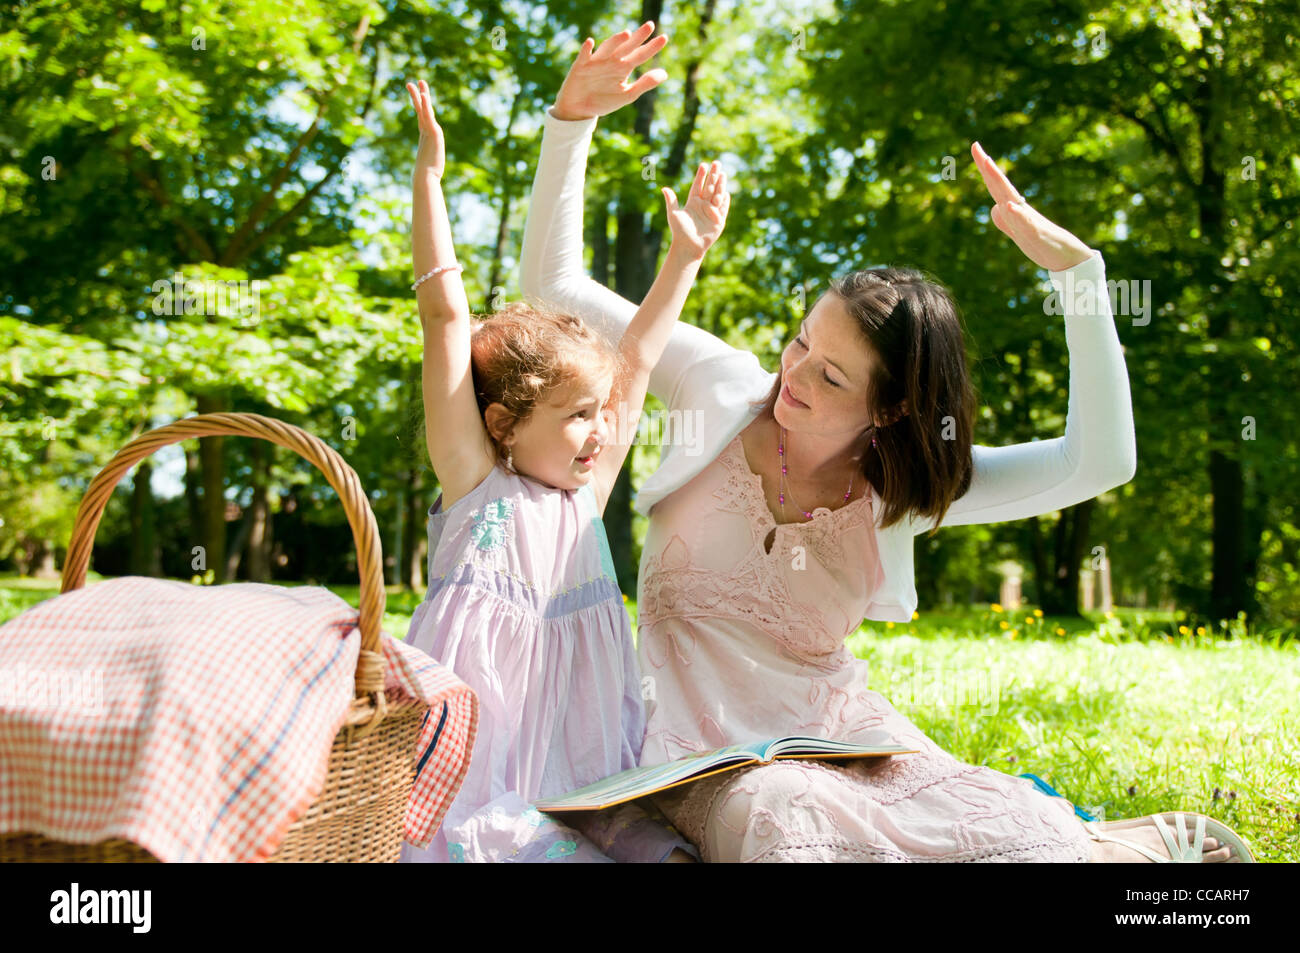 Mutter und Kind Lesebuch Picknick im park Stockfoto